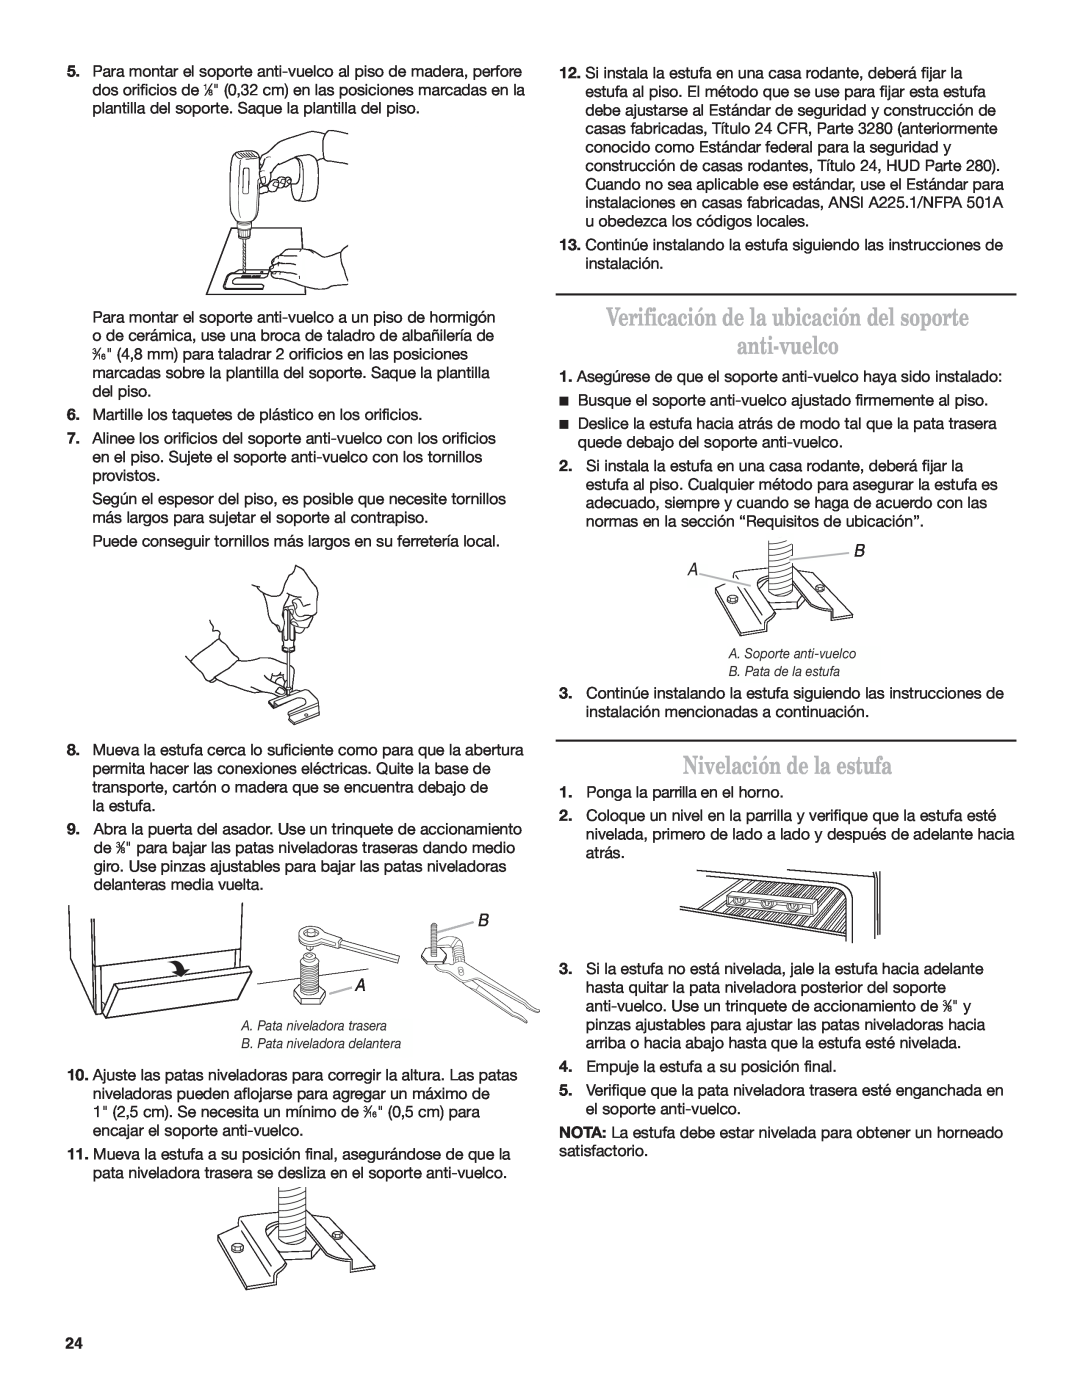 Estate W10173755D installation instructions Verificación de la ubicación del soporte anti-vuelco, Nivelación de la estufa 